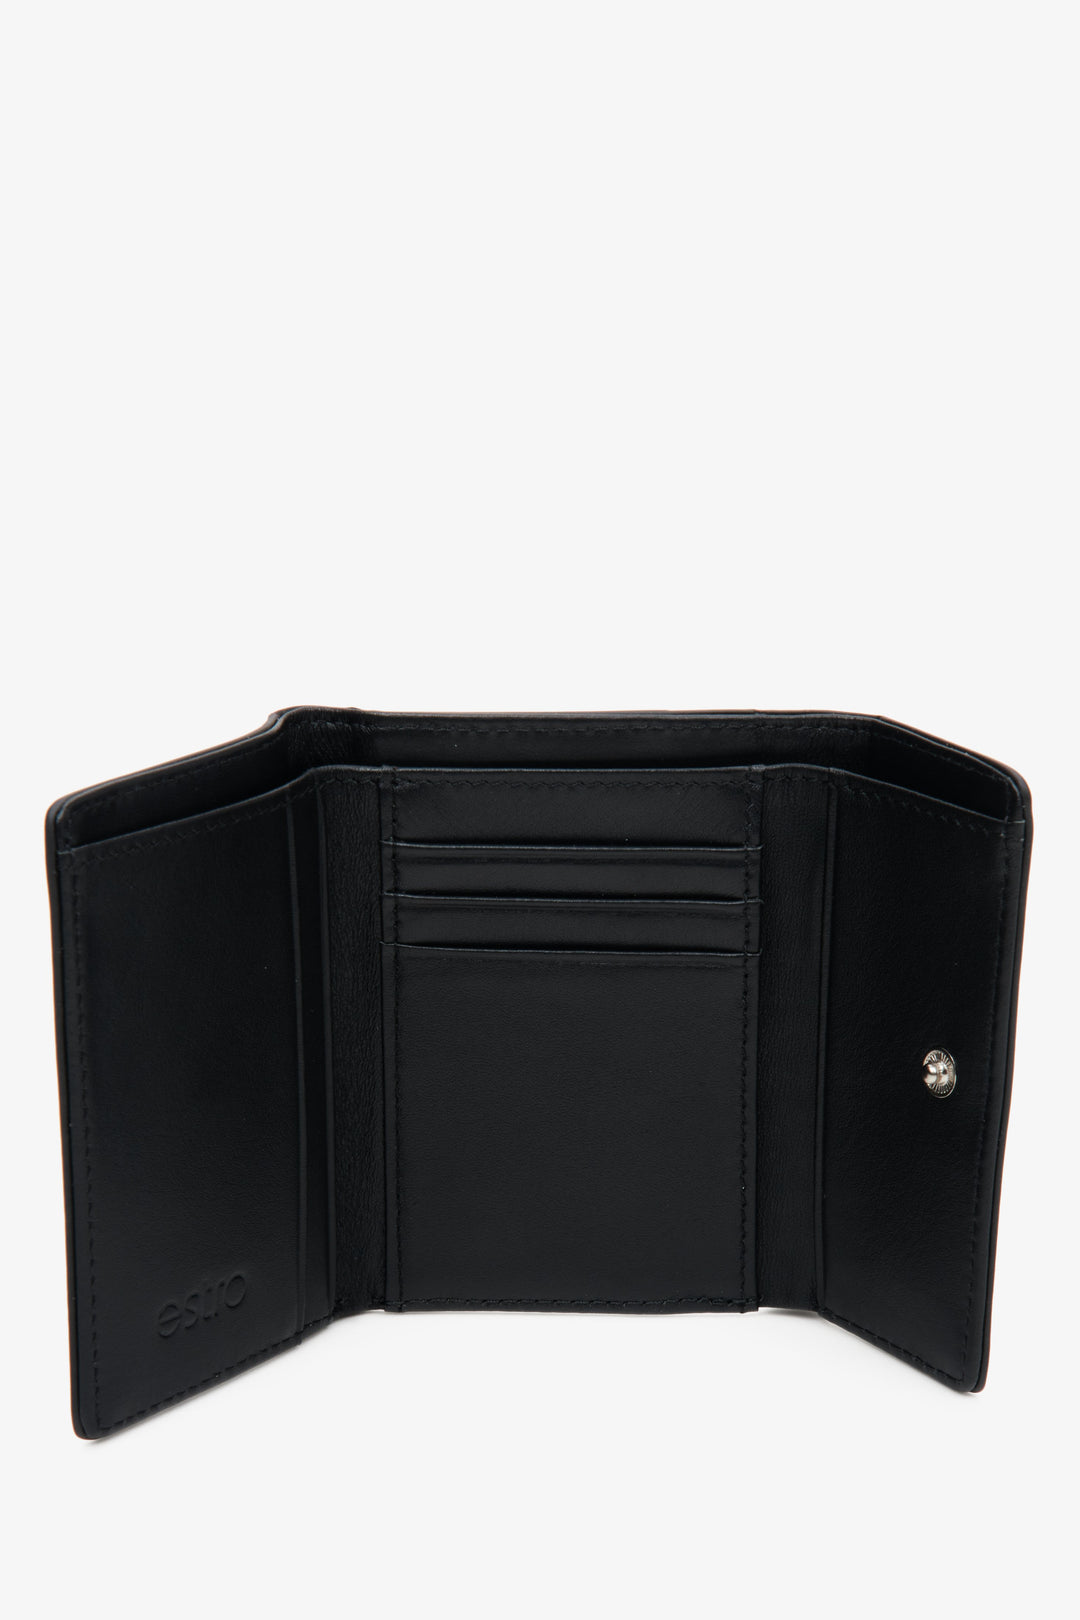 Damski, poręczny portfel średniej wielkości ze skóry naturalnej w kolorze czarnym - wnętrze modelu.